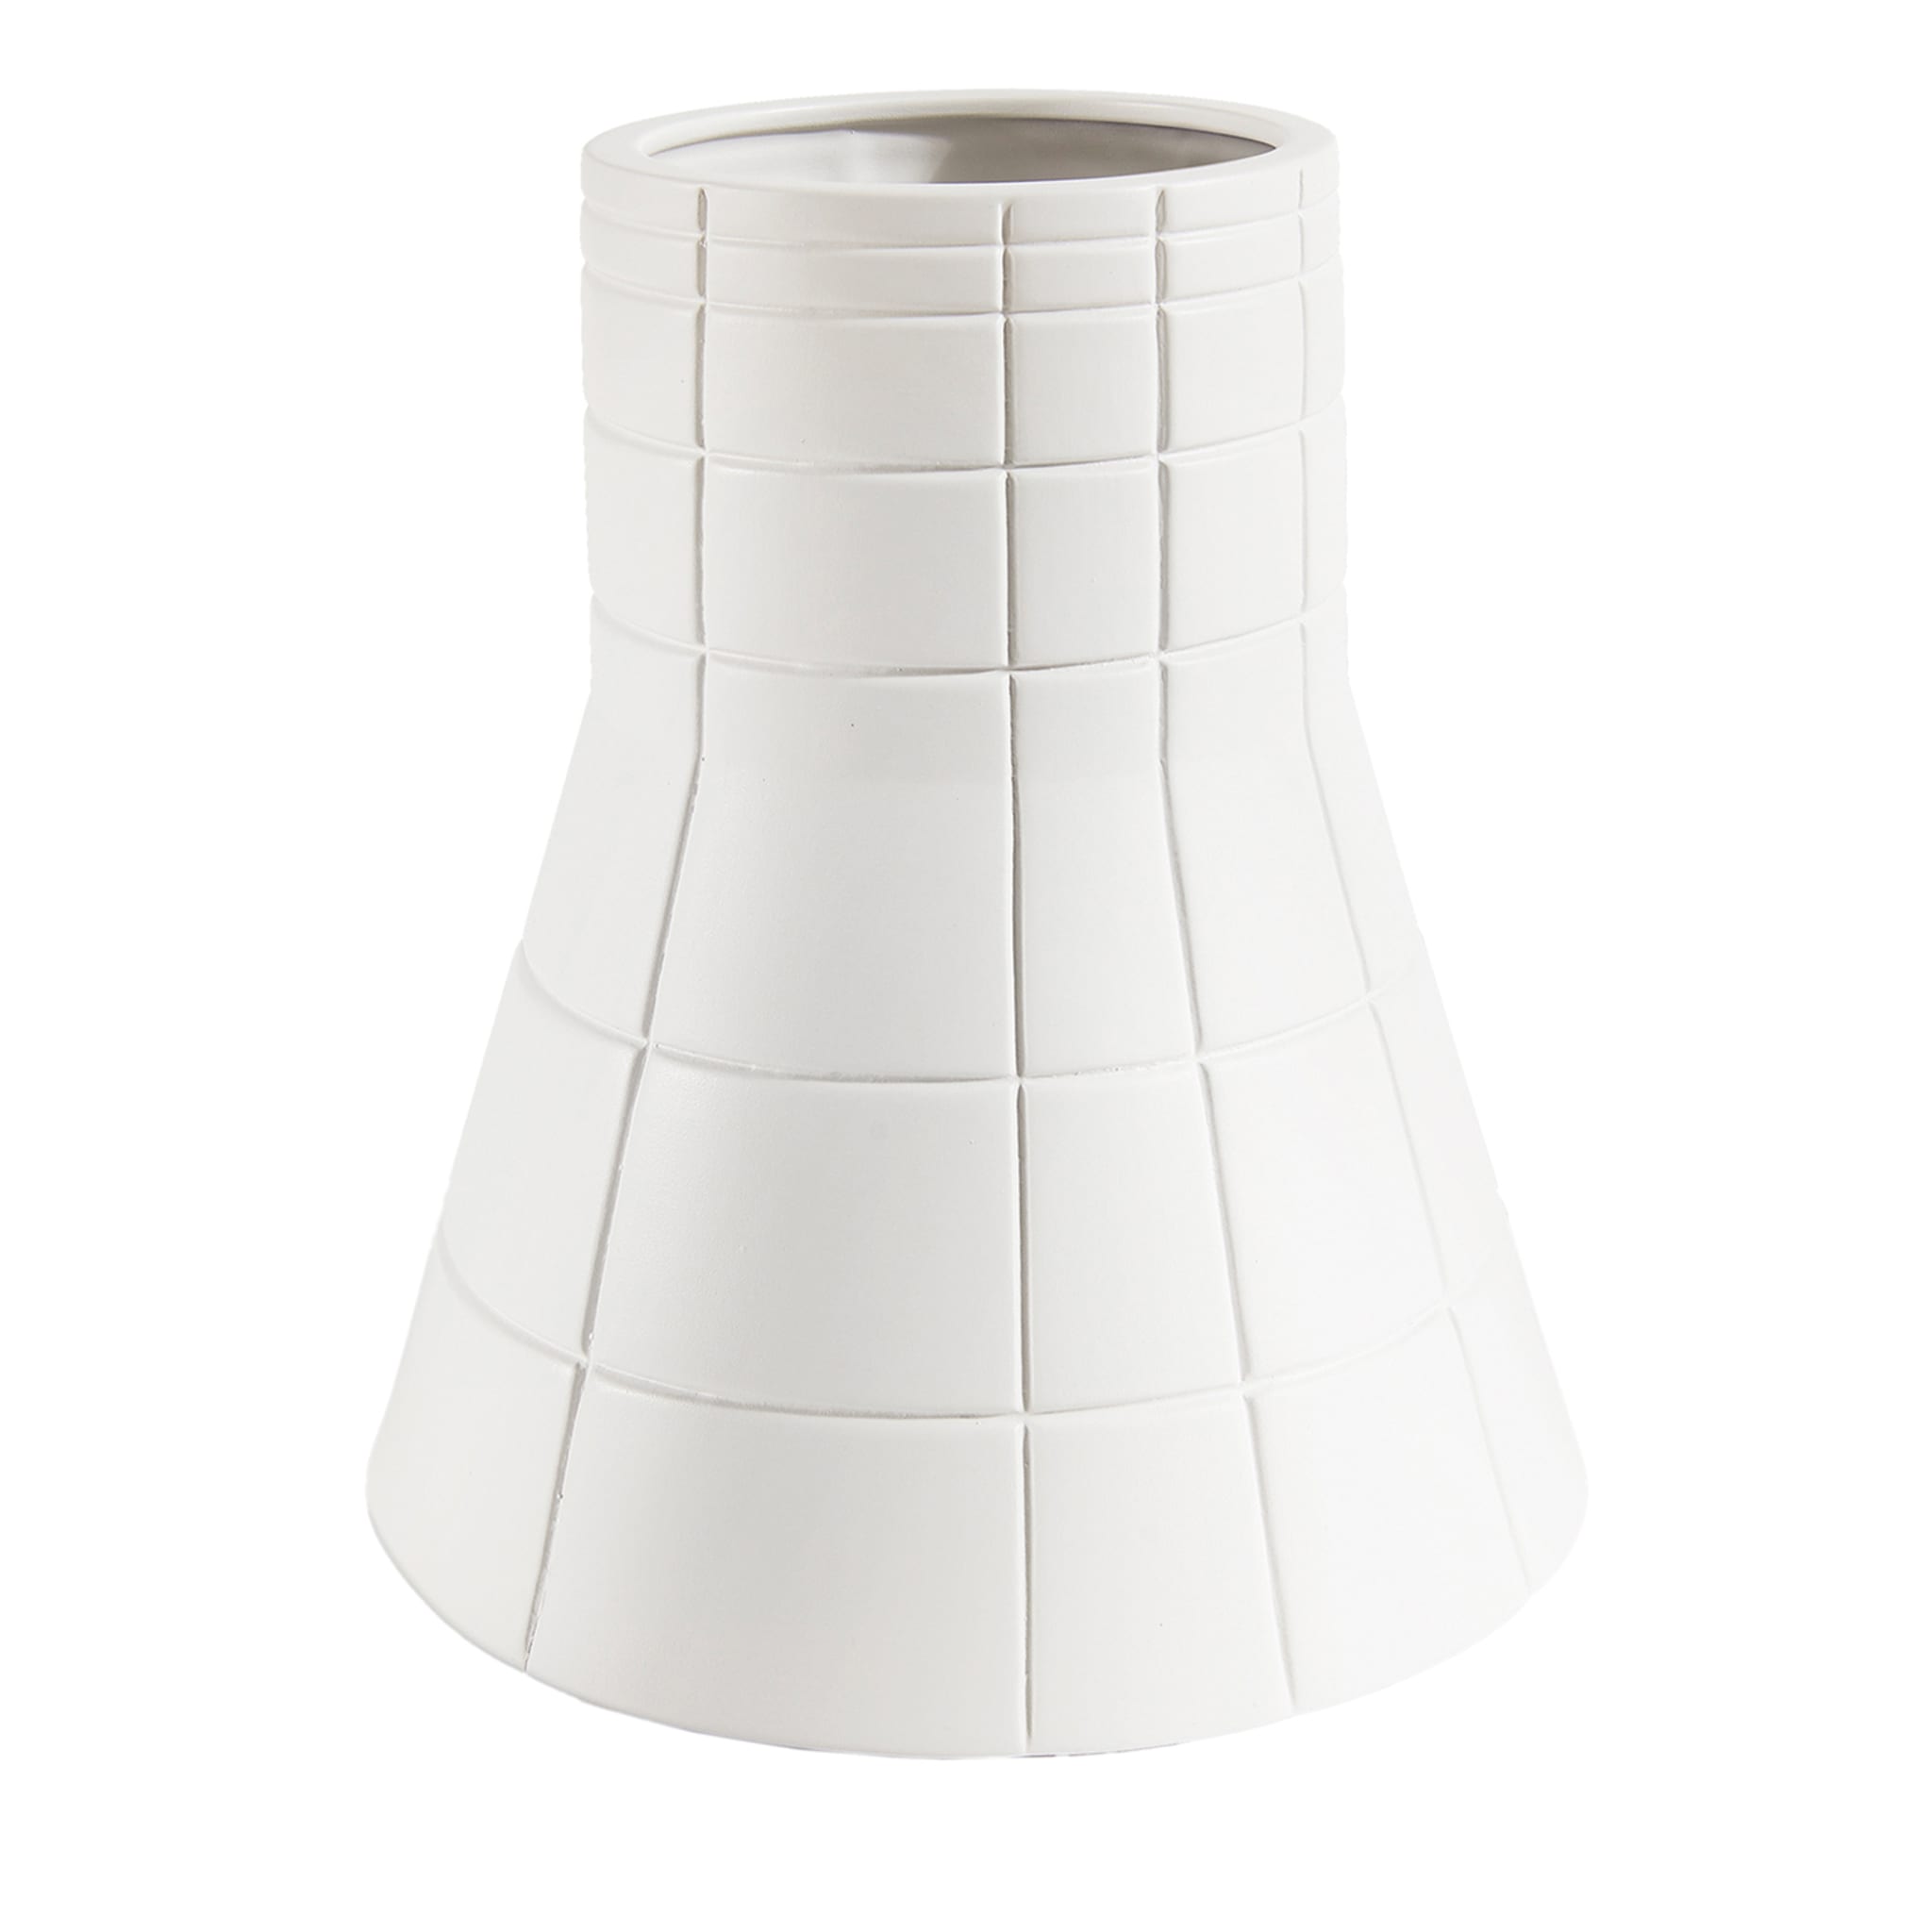 Rikuadra White Ceramic Vase #3 - Main view